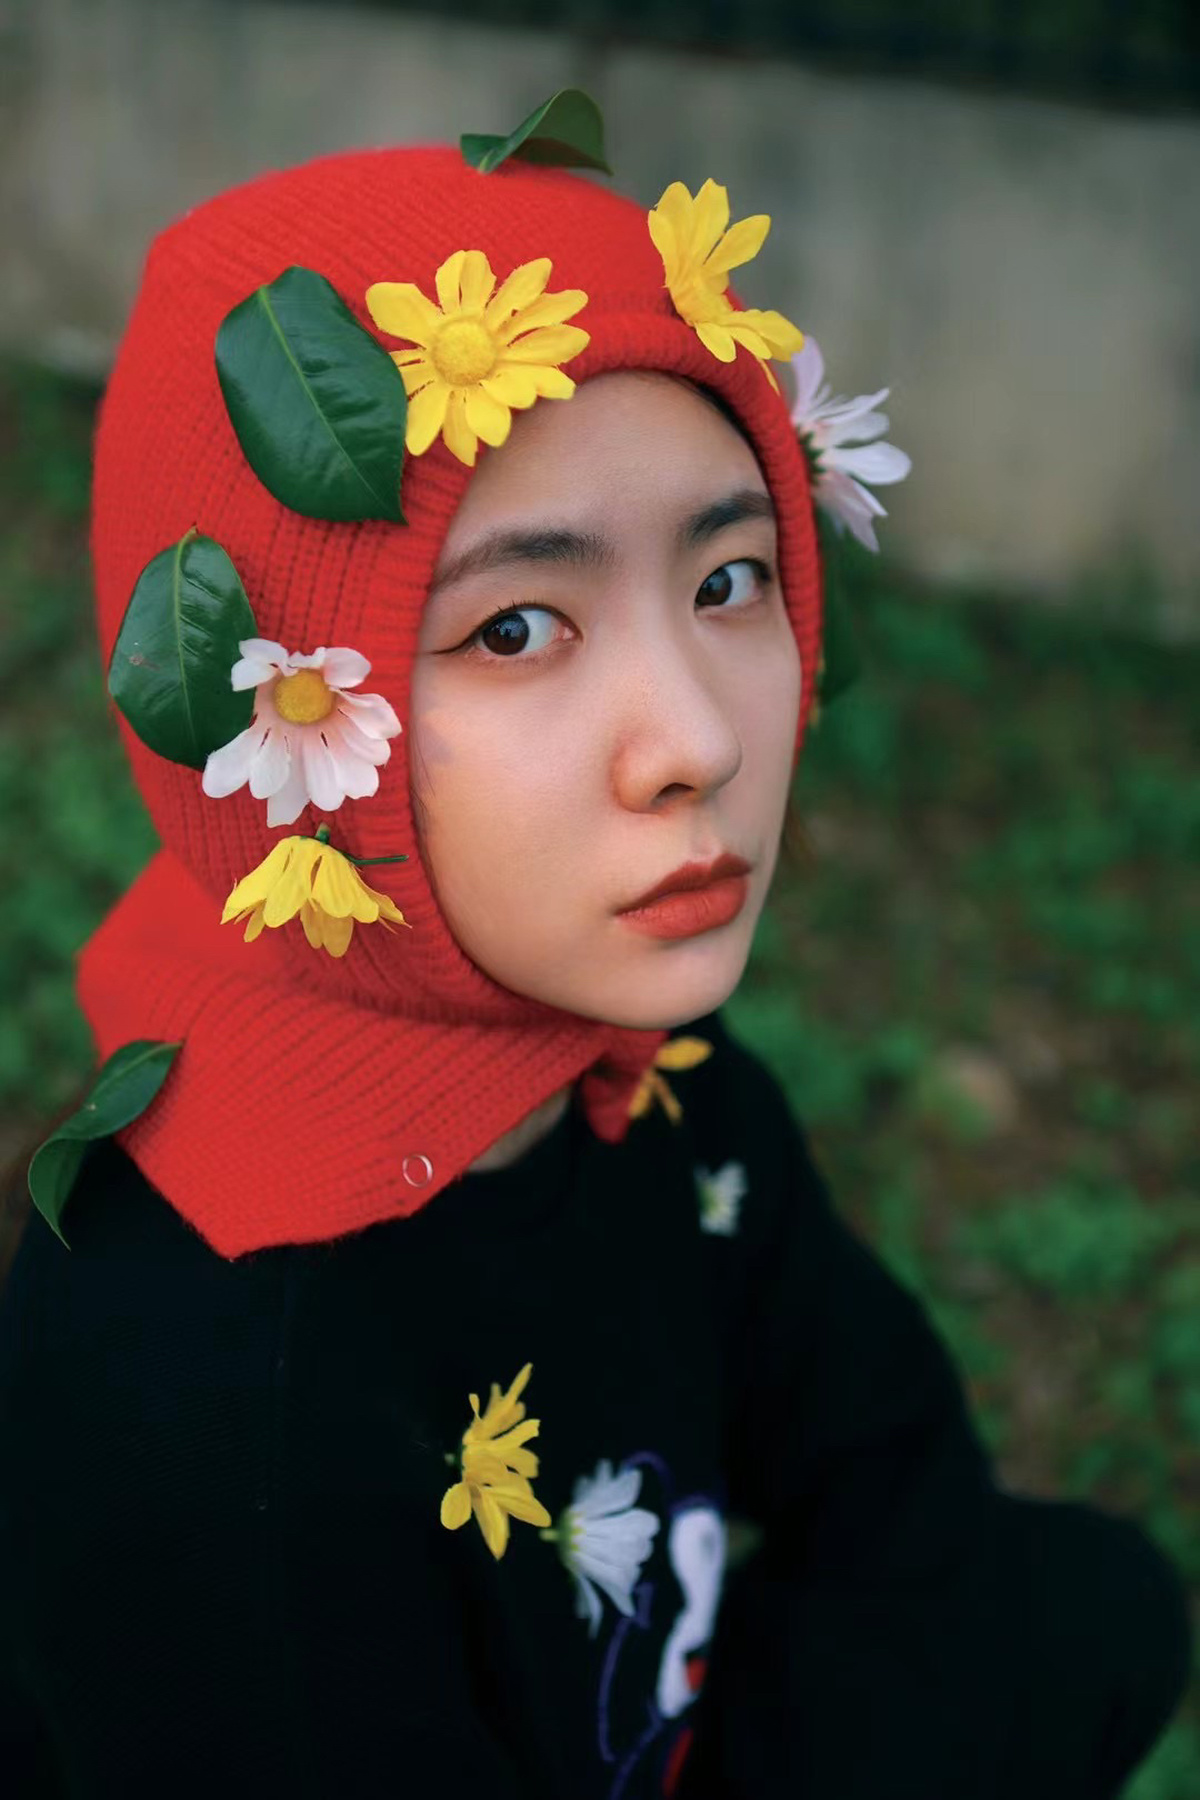 一个戴红帽子上长着花的年轻男孩